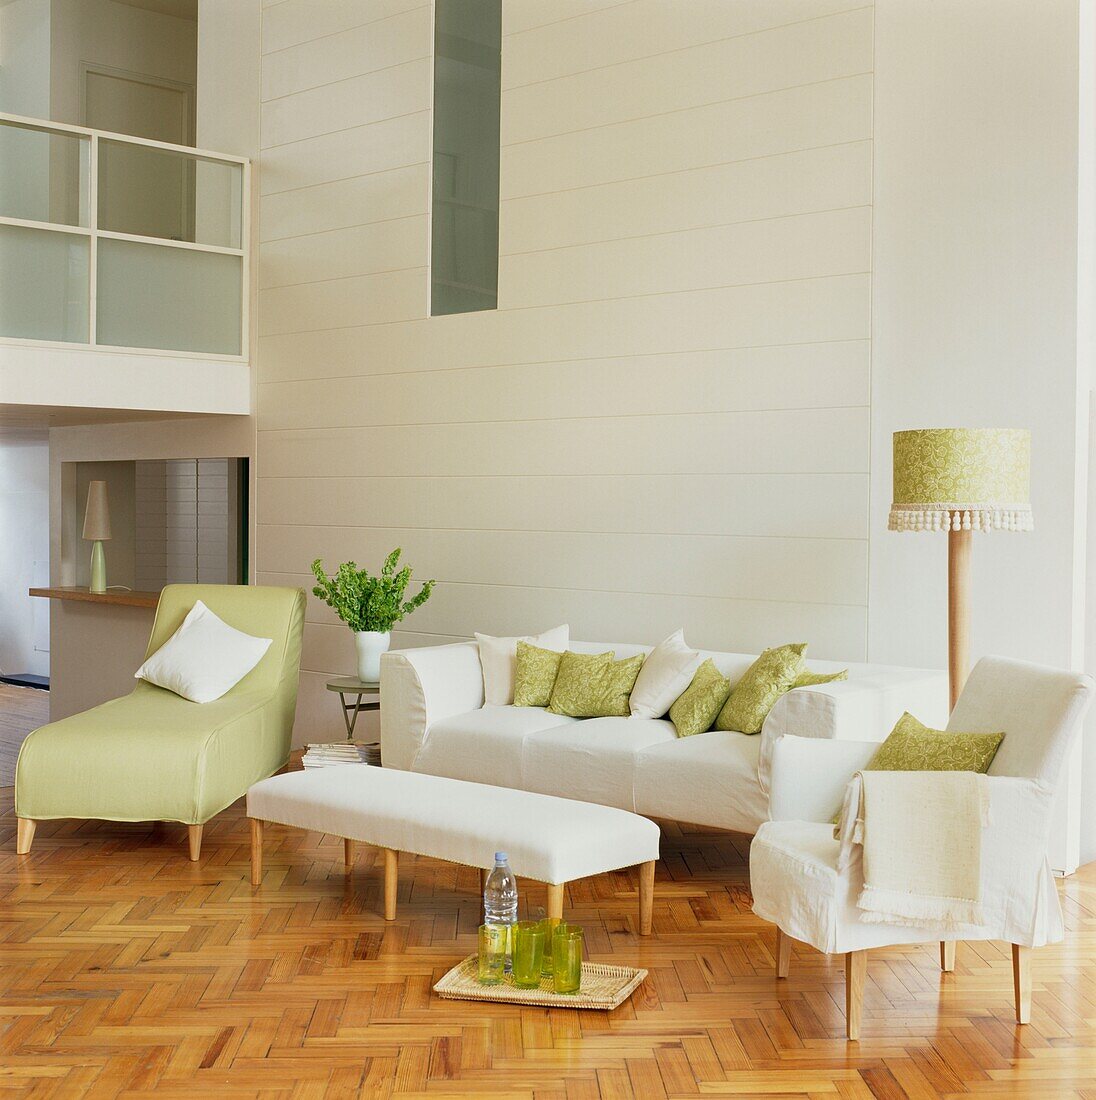 Weißes Sofa mit passenden Kissen und pastellgrüner Liege in einem umgebauten Lagerhaus mit hohen Decken und Parkettboden